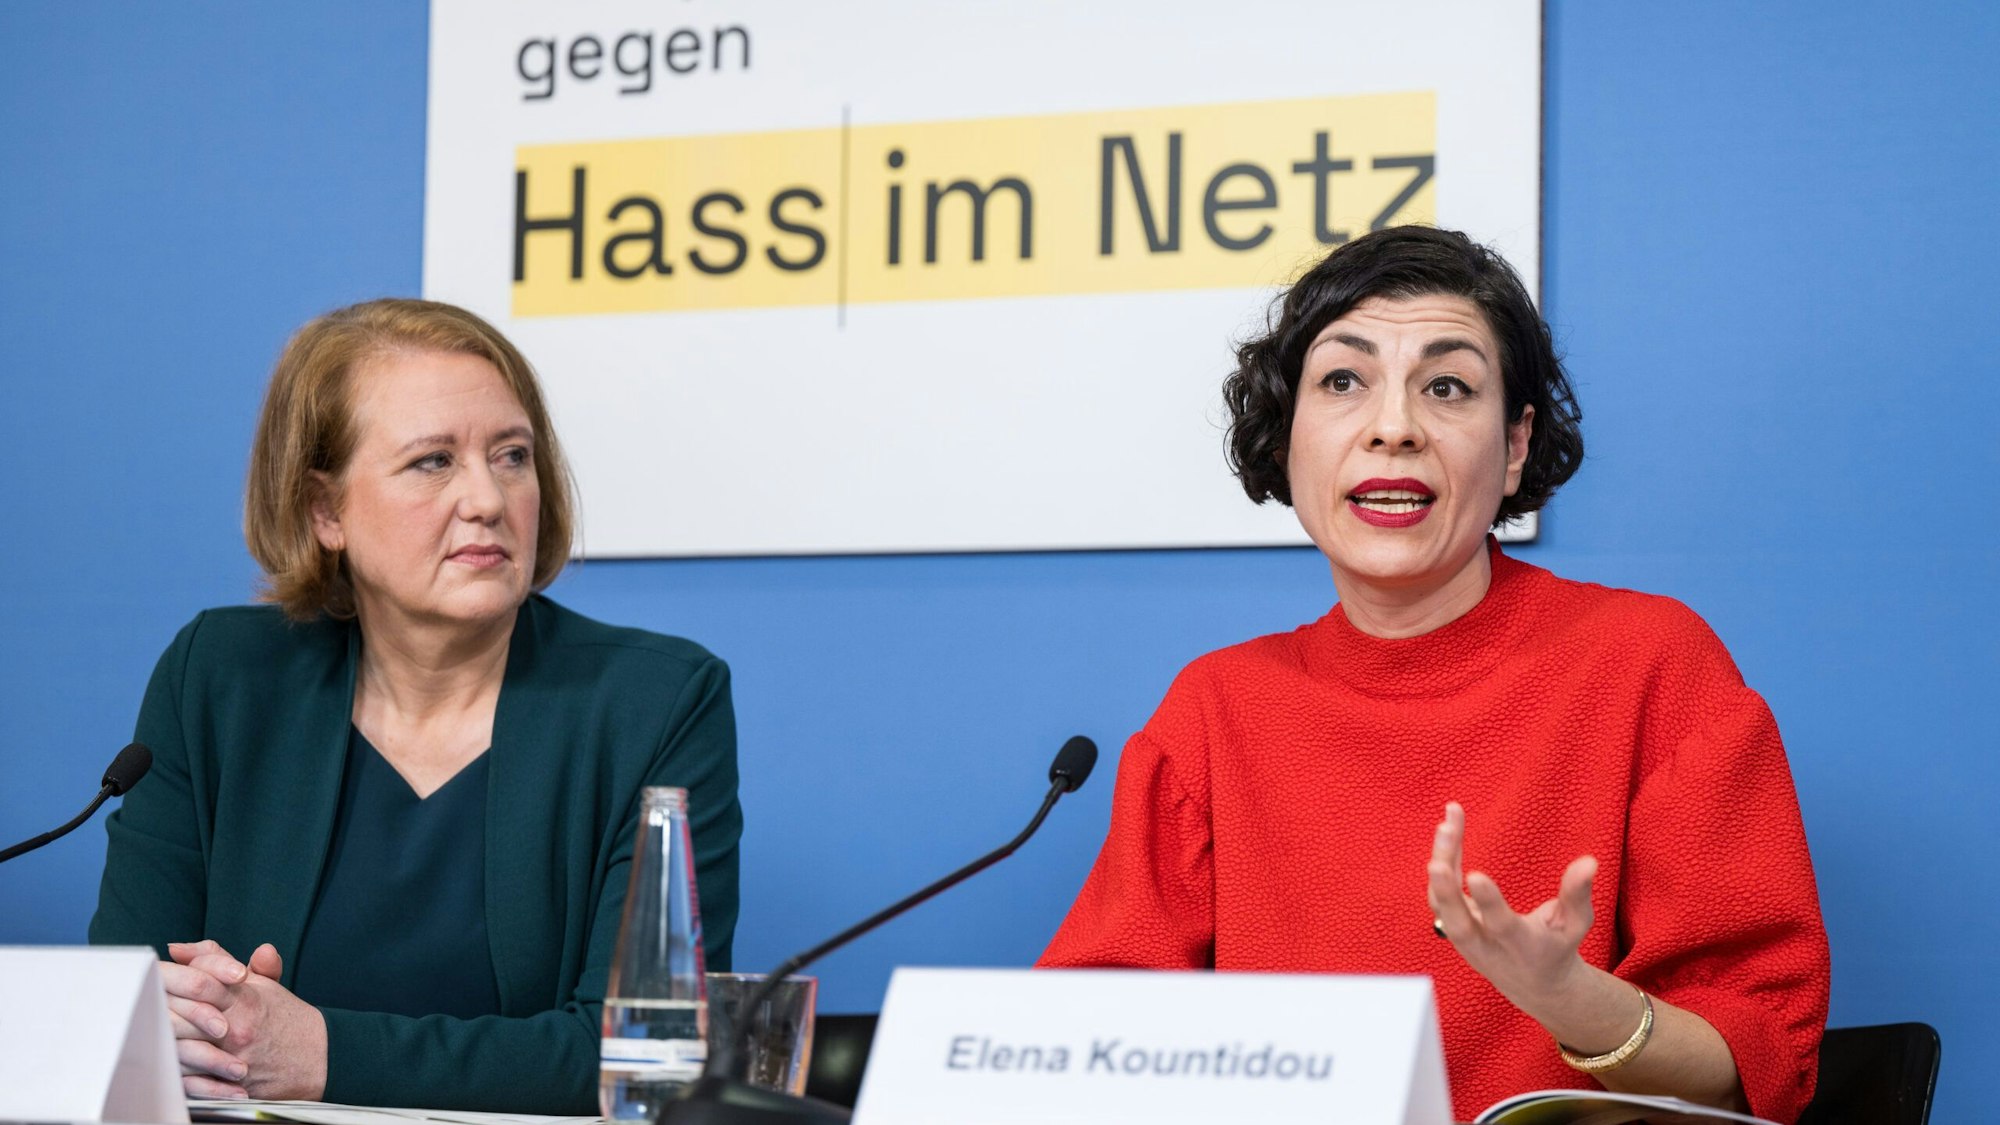 Lisa Paus und Elena Kountidou sitzen an einem Tisch, vor ihnen stehen Namensschilder und Mikrofone auf dem Tisch. Im Hintergrund die Aufschrift "gegen Hass im Netz".